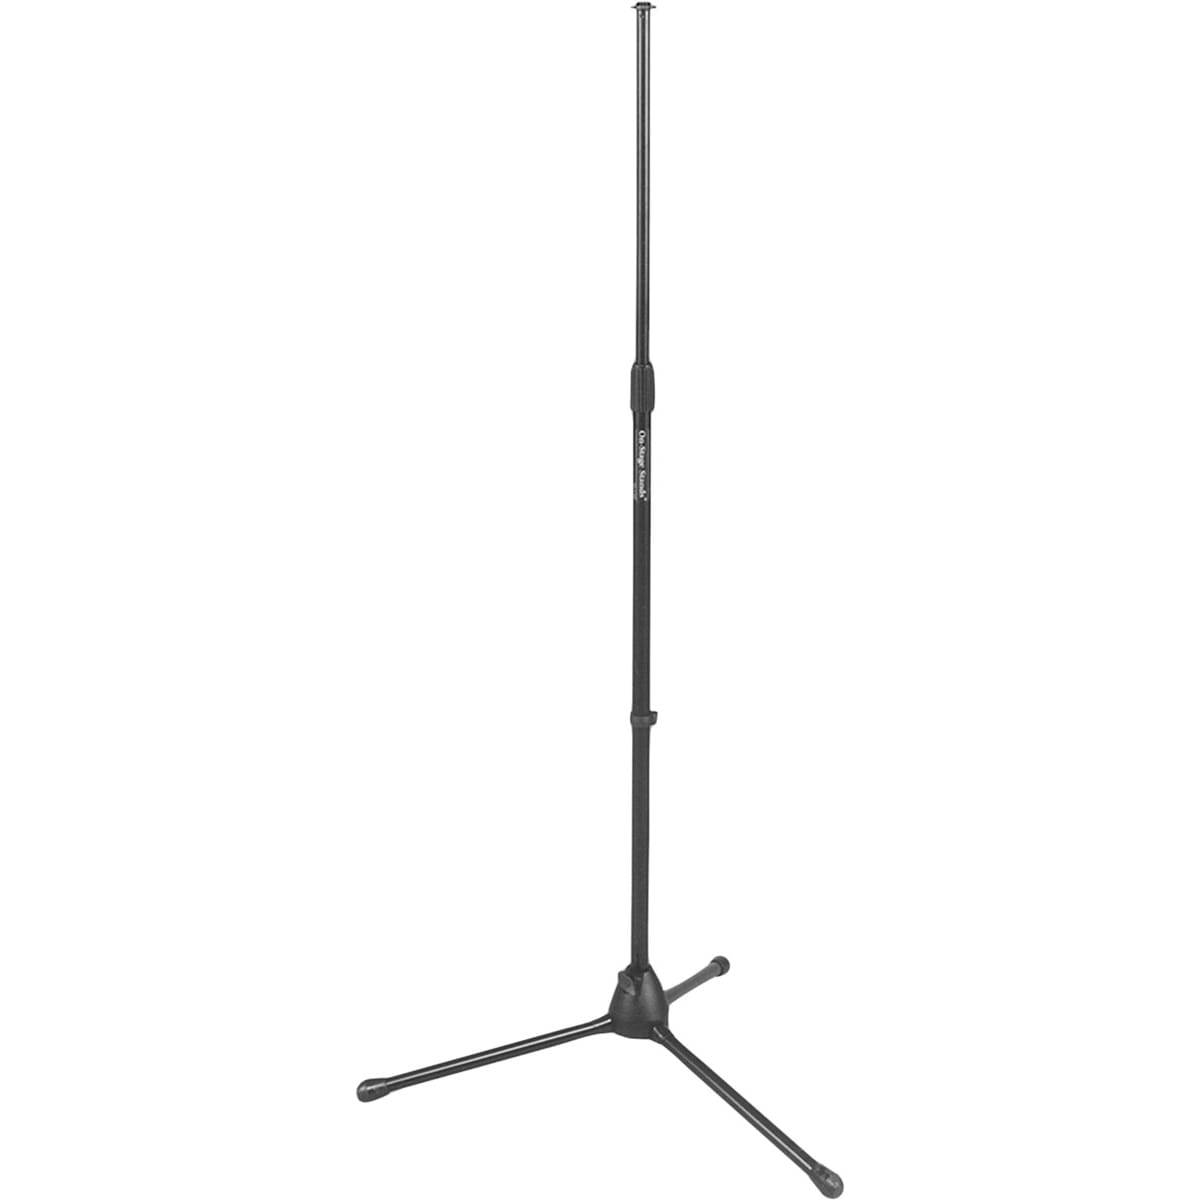 Stand para micrófono con base tipo tripie Euro-Style color negro.